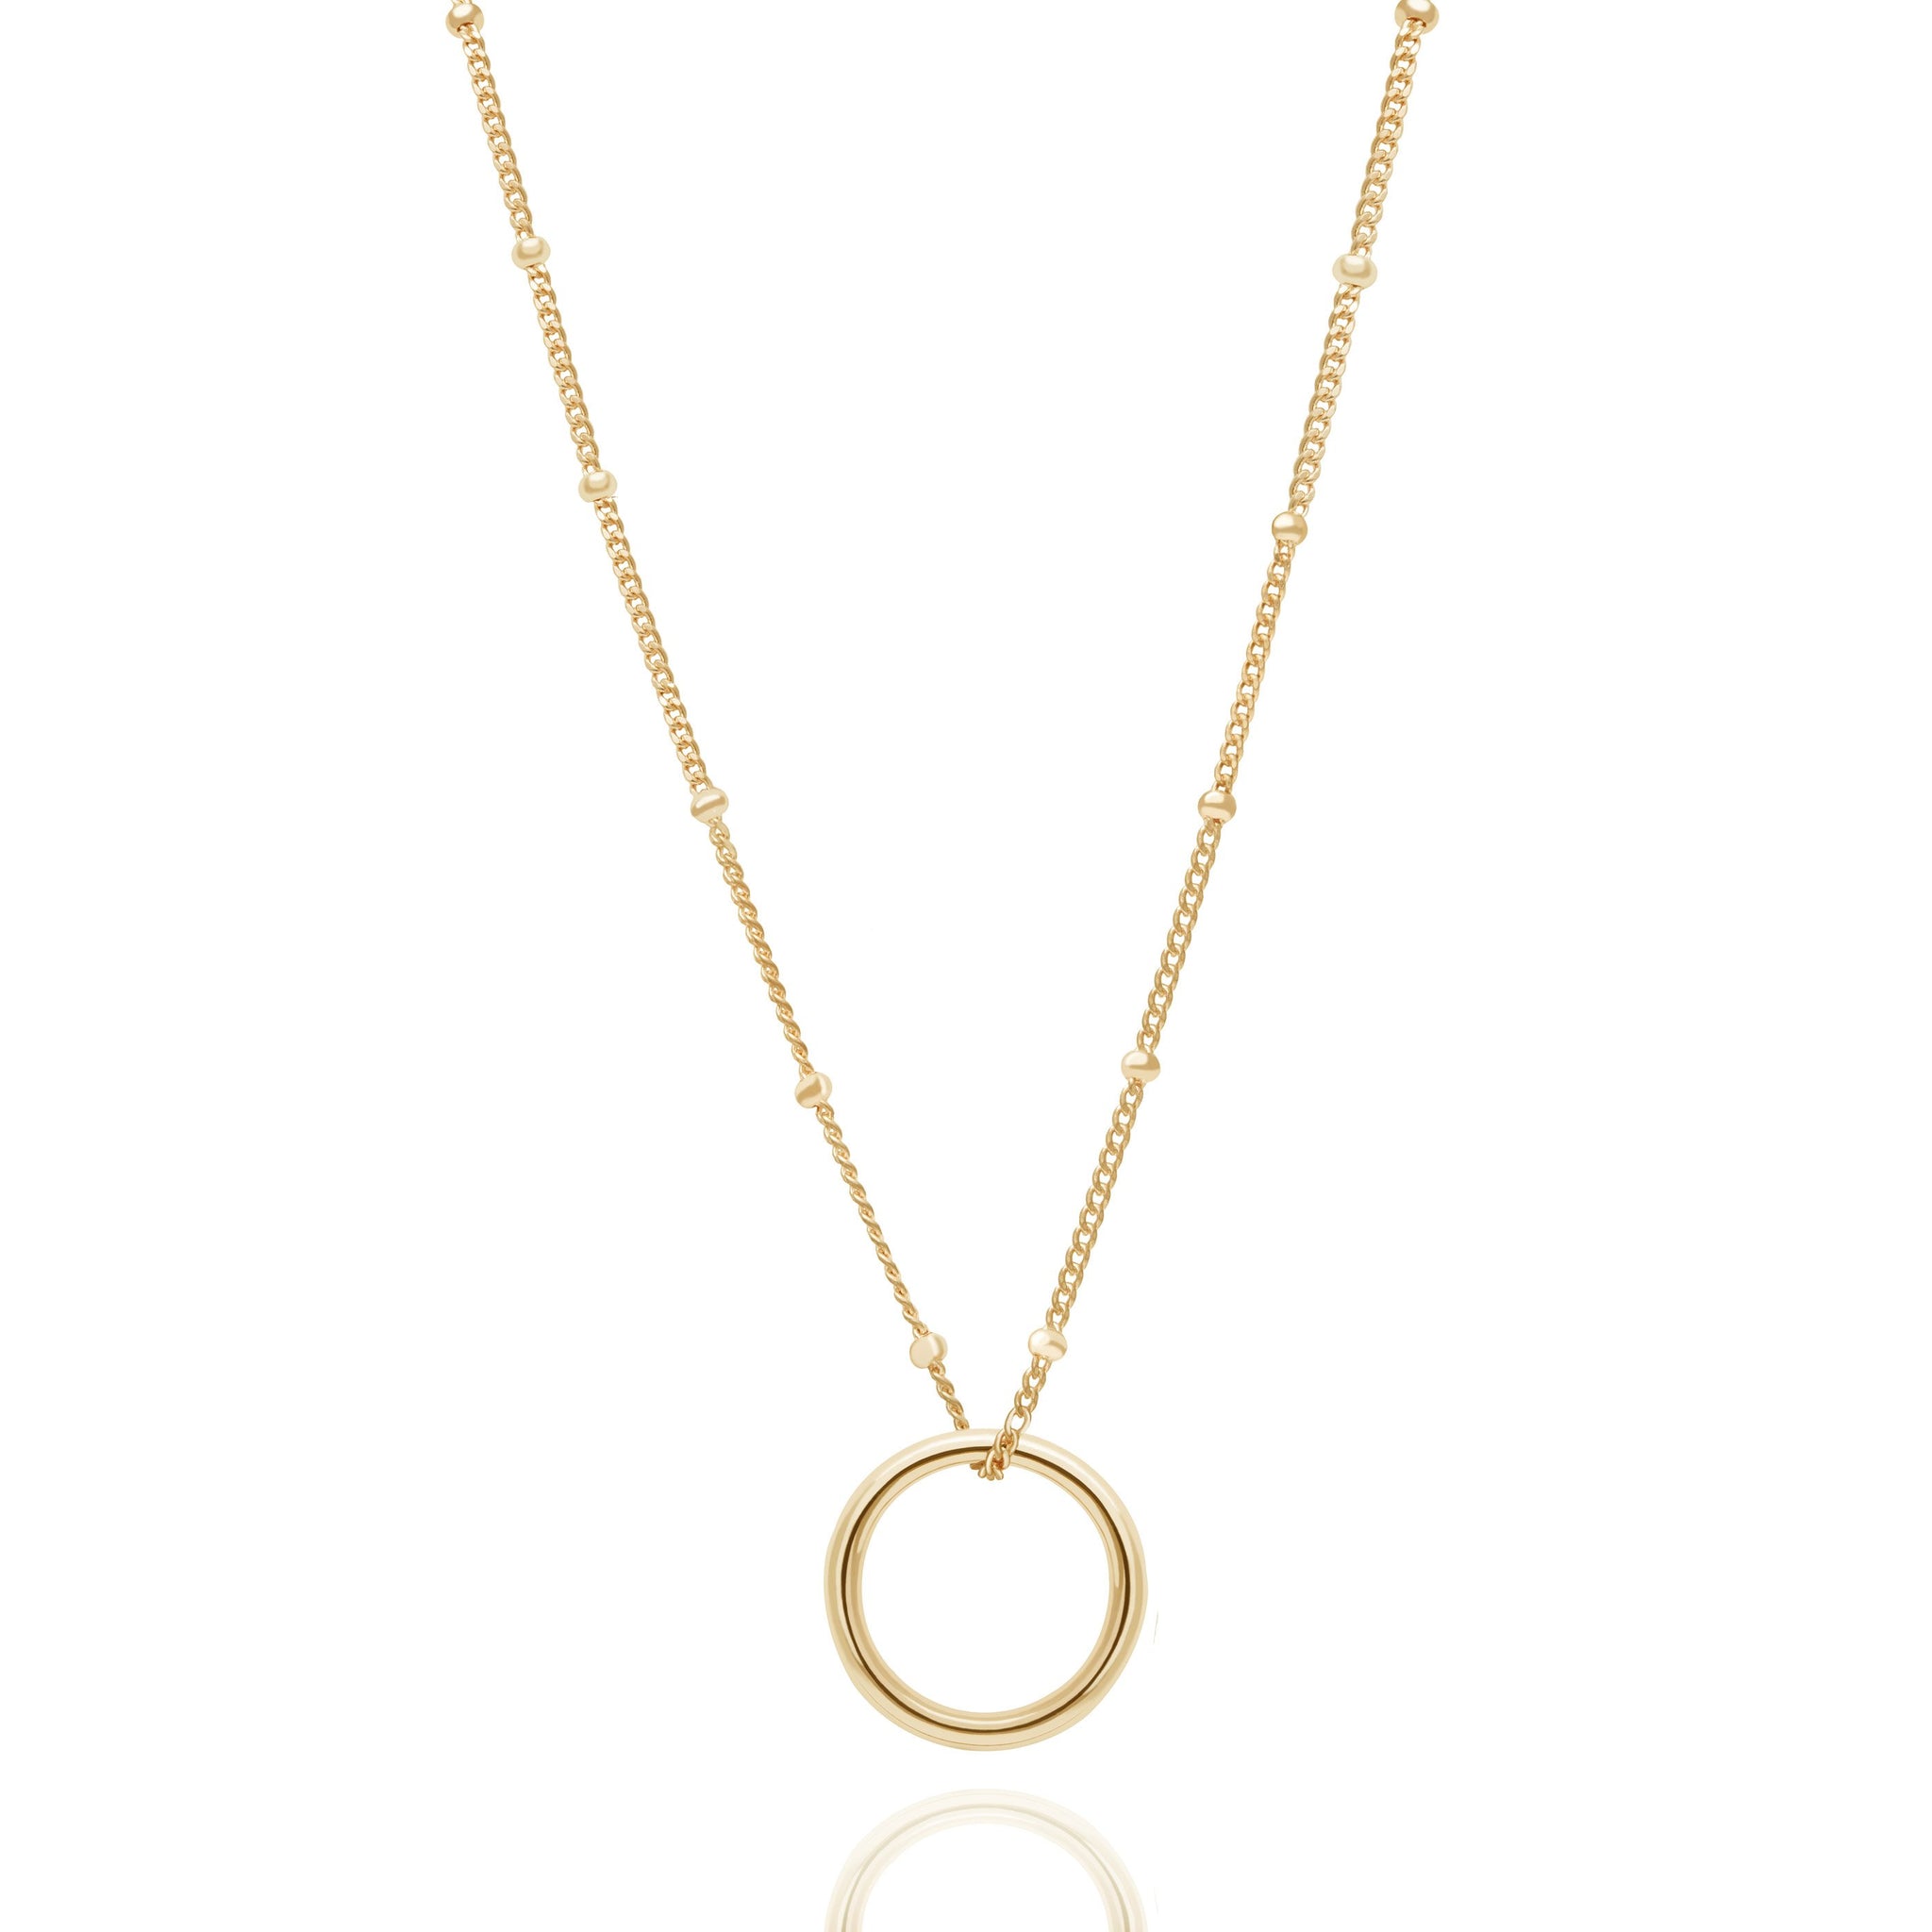 Gold Halo Pendant Necklace | Astrid & Miyu Necklaces – Astrid & Miyu .us